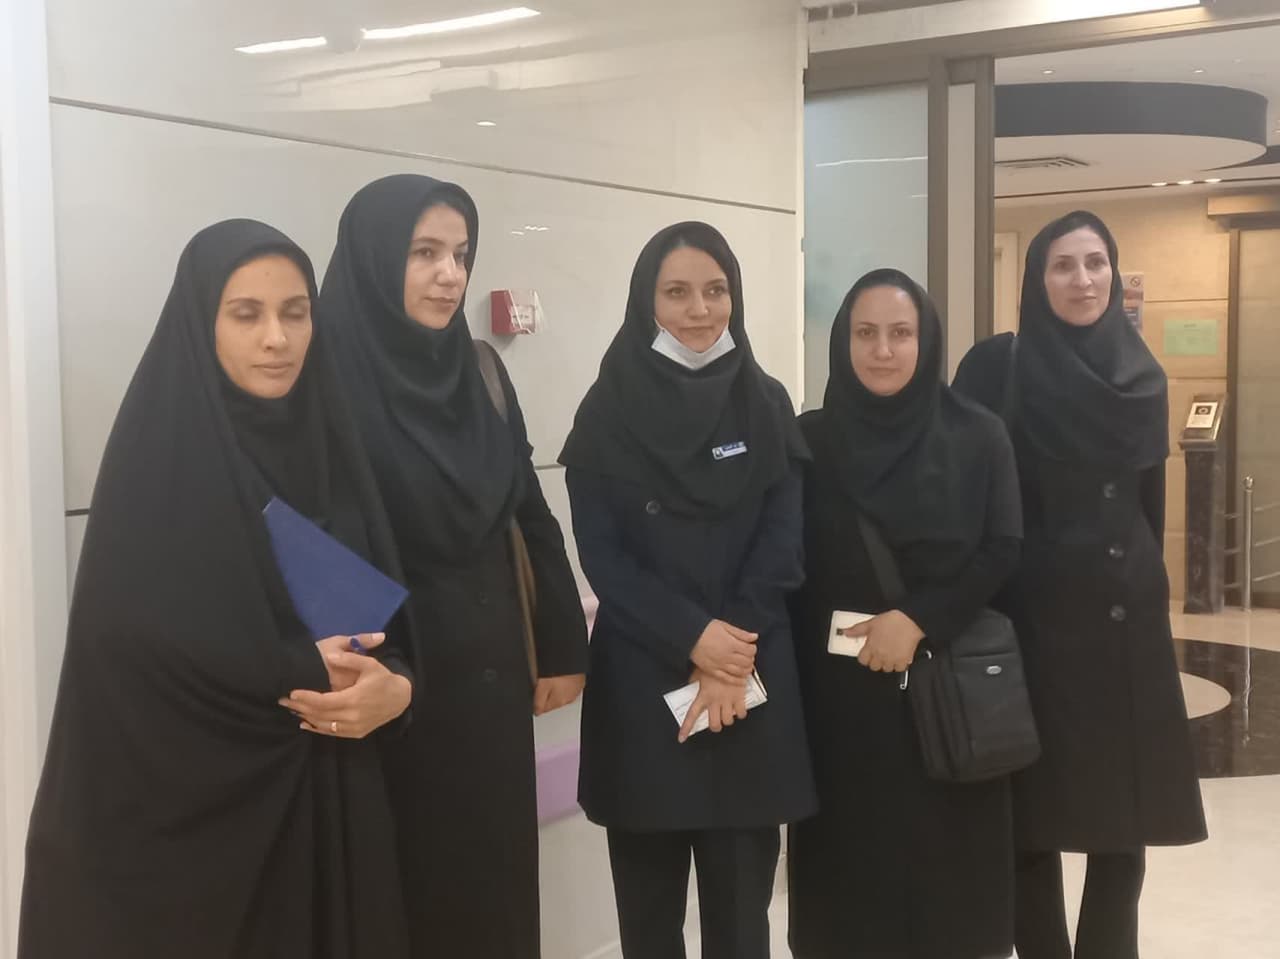 به مناسبت هفته ملی جمعیت بازدید از اتاق تکریم مادر و کودک بیمارستان ثامن الائمه (ع)بجنورد و درمانگاه فرهنگیان 29 اردیبهشت ماه انجام شد